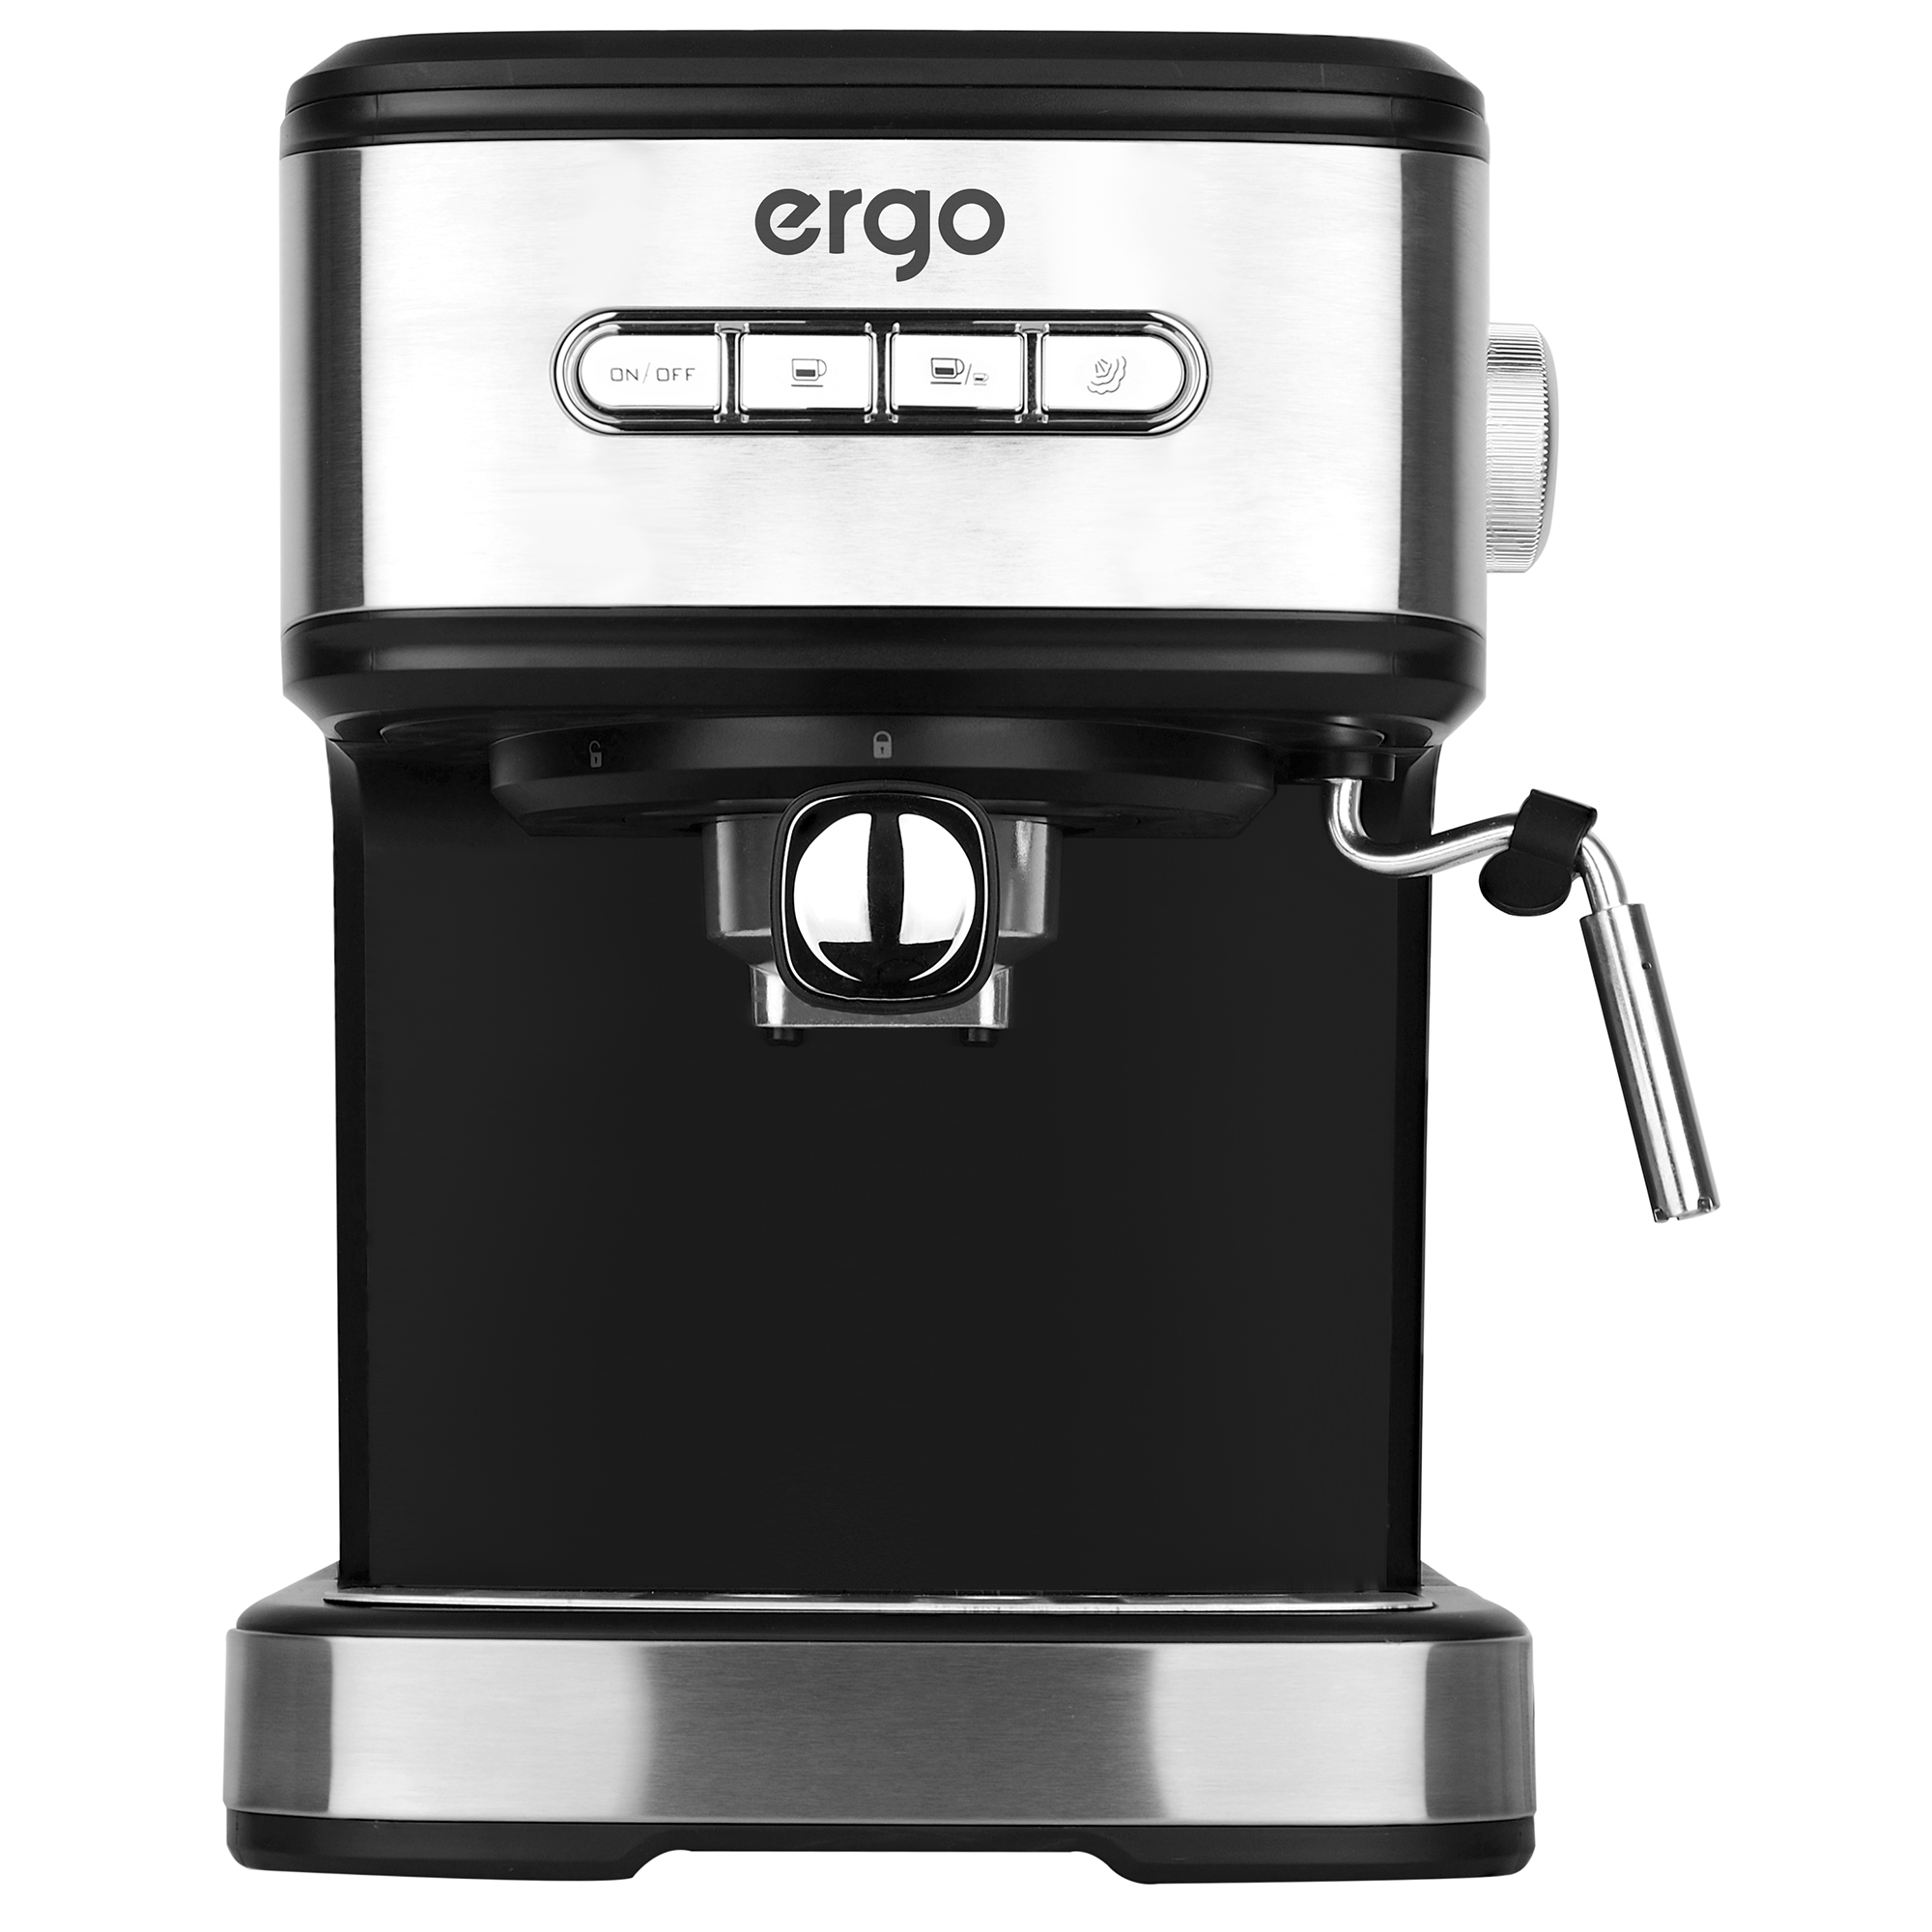 Кофеварка ERGO CE 7700 в Киеве